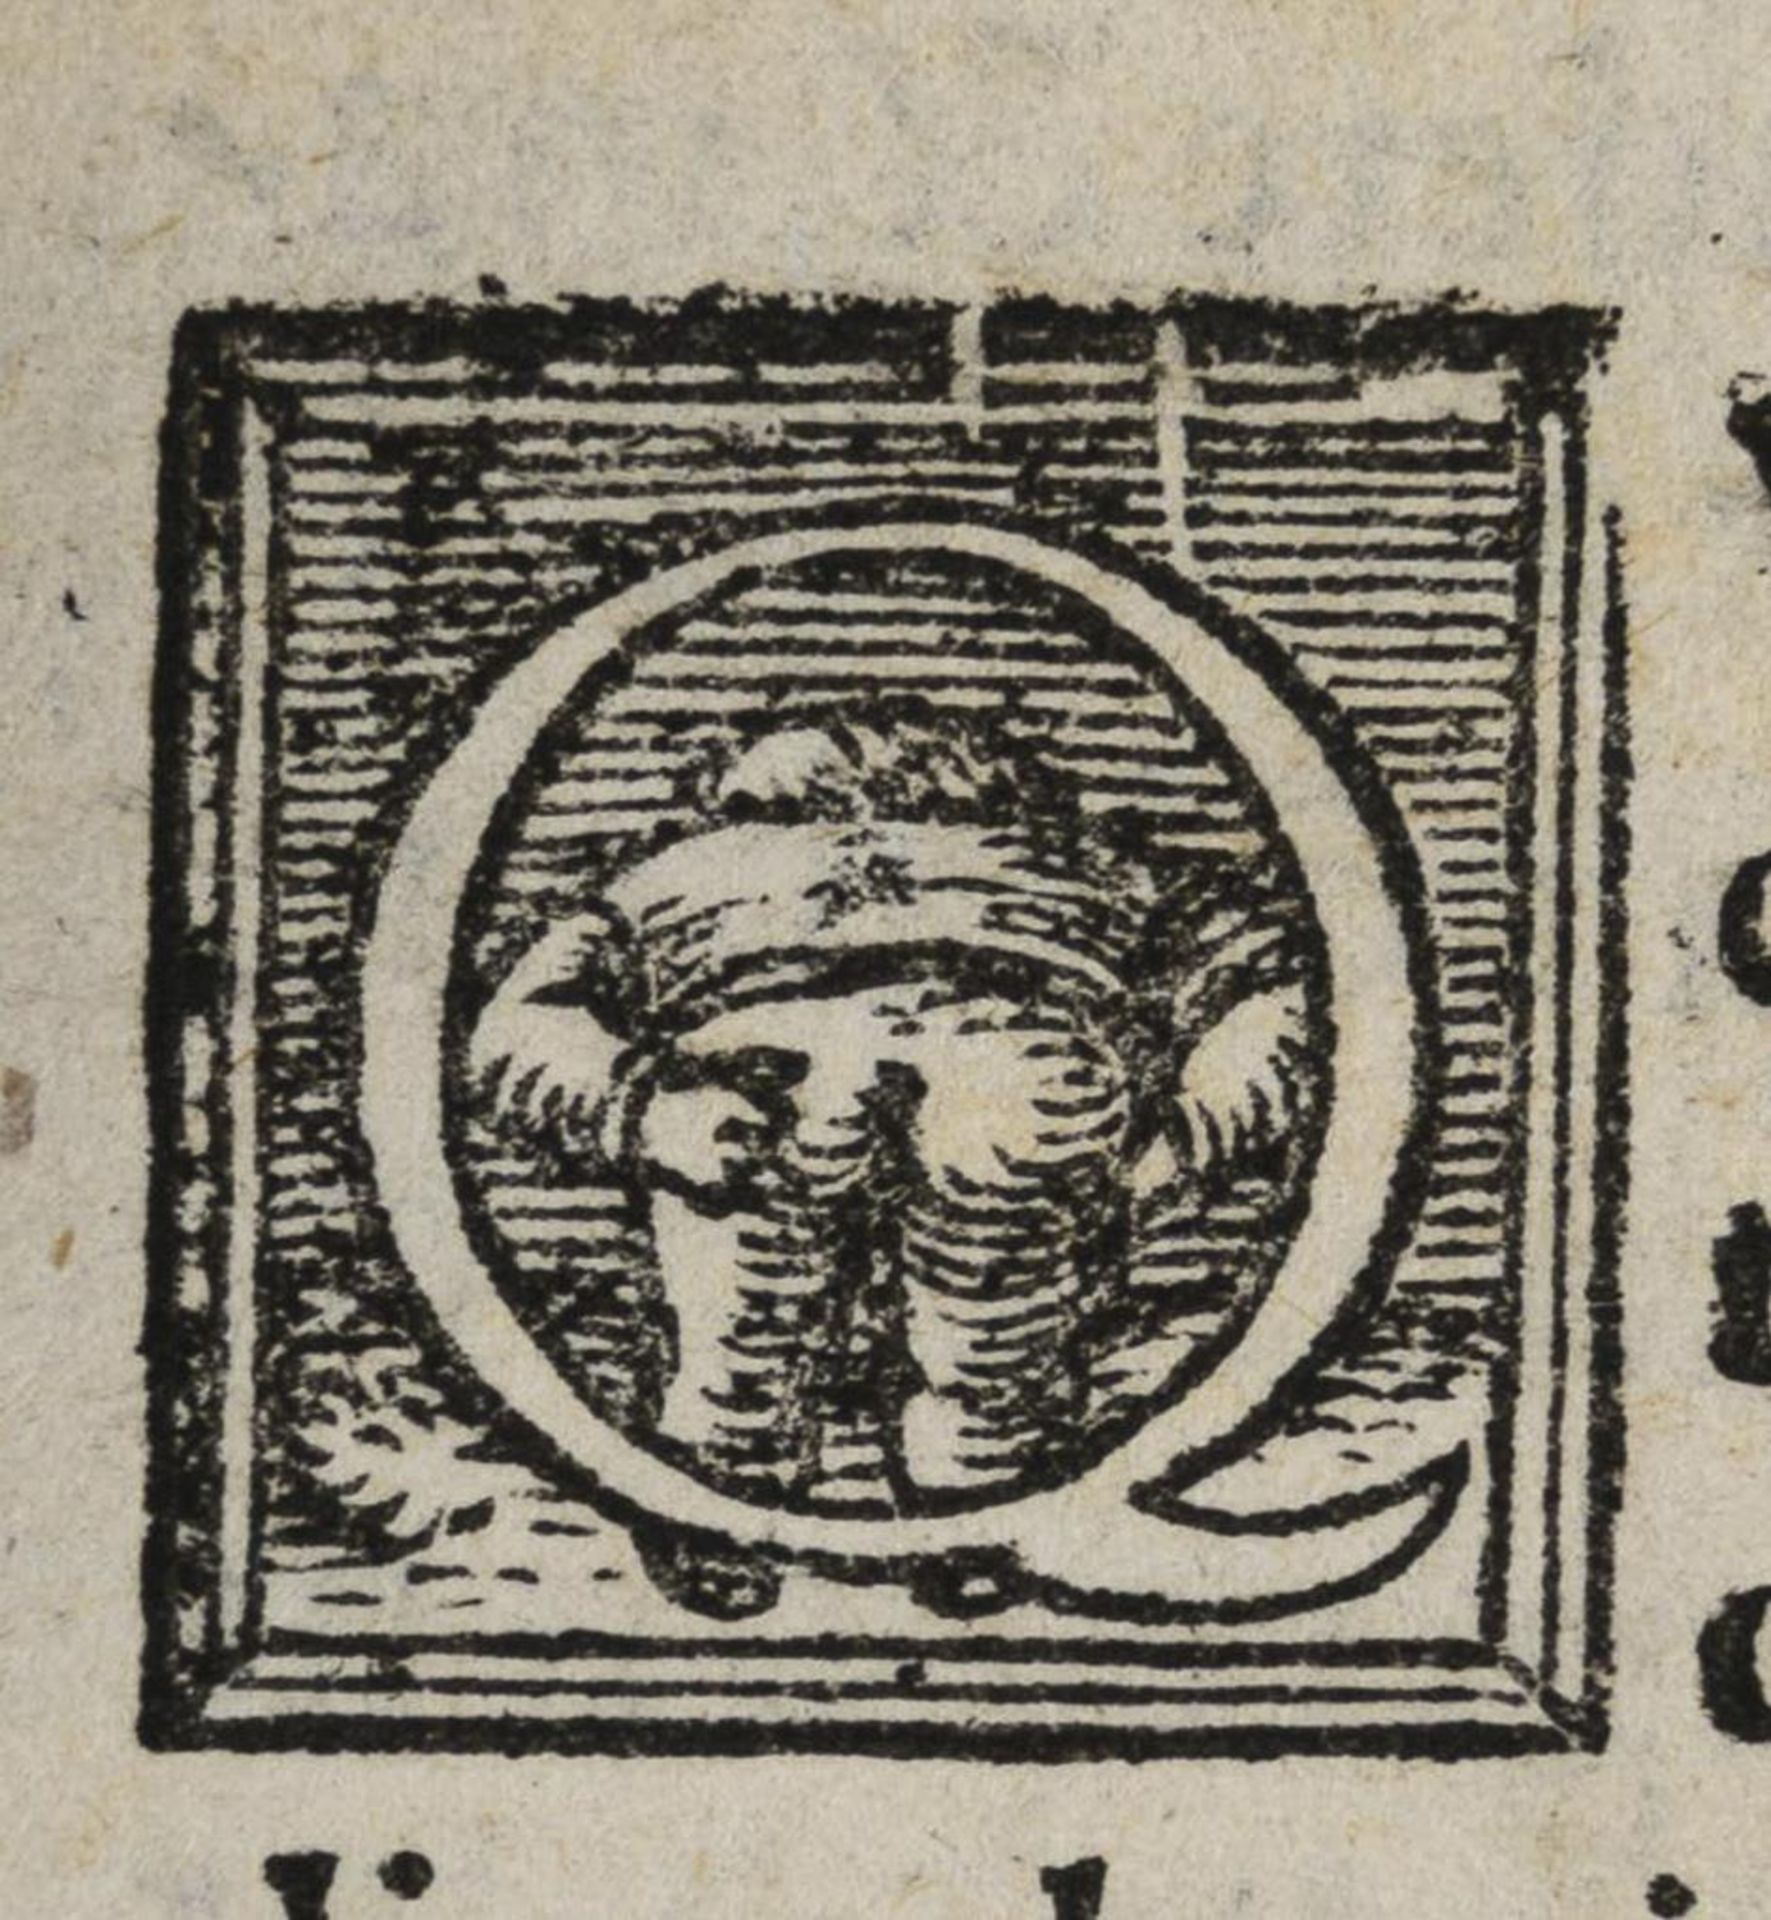 HUMELBERGIJ, Gabrielis. "Apicii Caelli de Opsoniis et condimentis, sive arte coqvinaria, libri X"... - Image 2 of 5